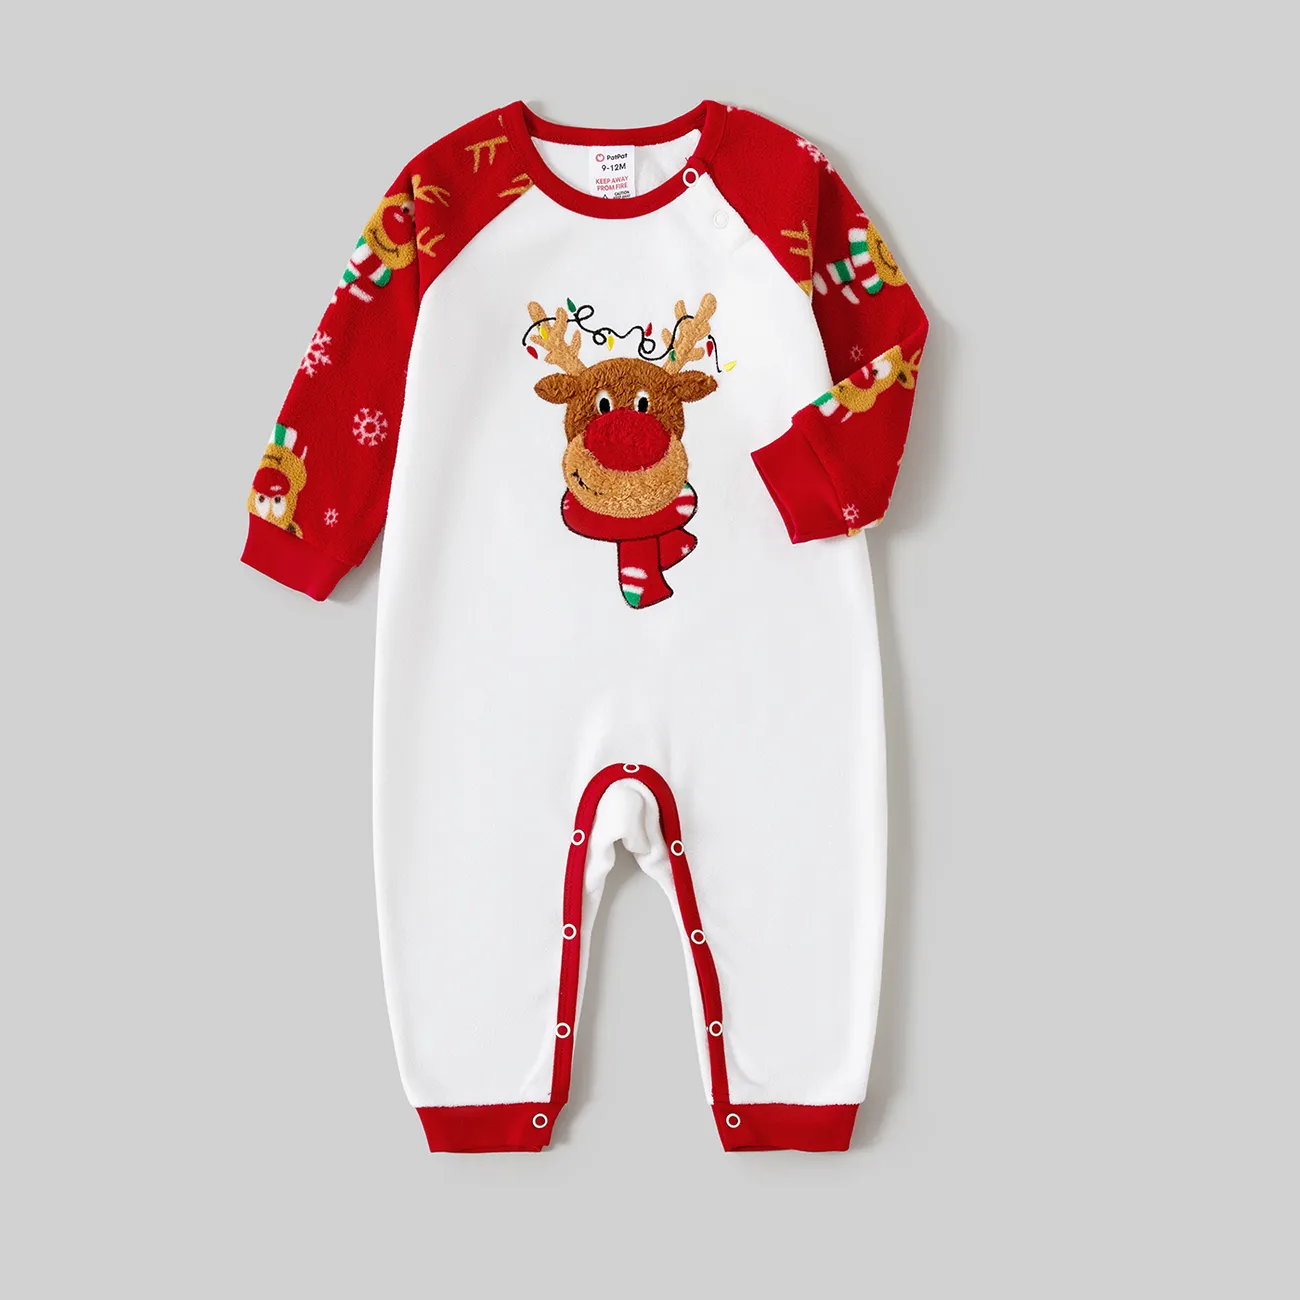 Natal Look de família Manga comprida Conjuntos de roupa para a família Pijamas (Flame Resistant)  big image 1